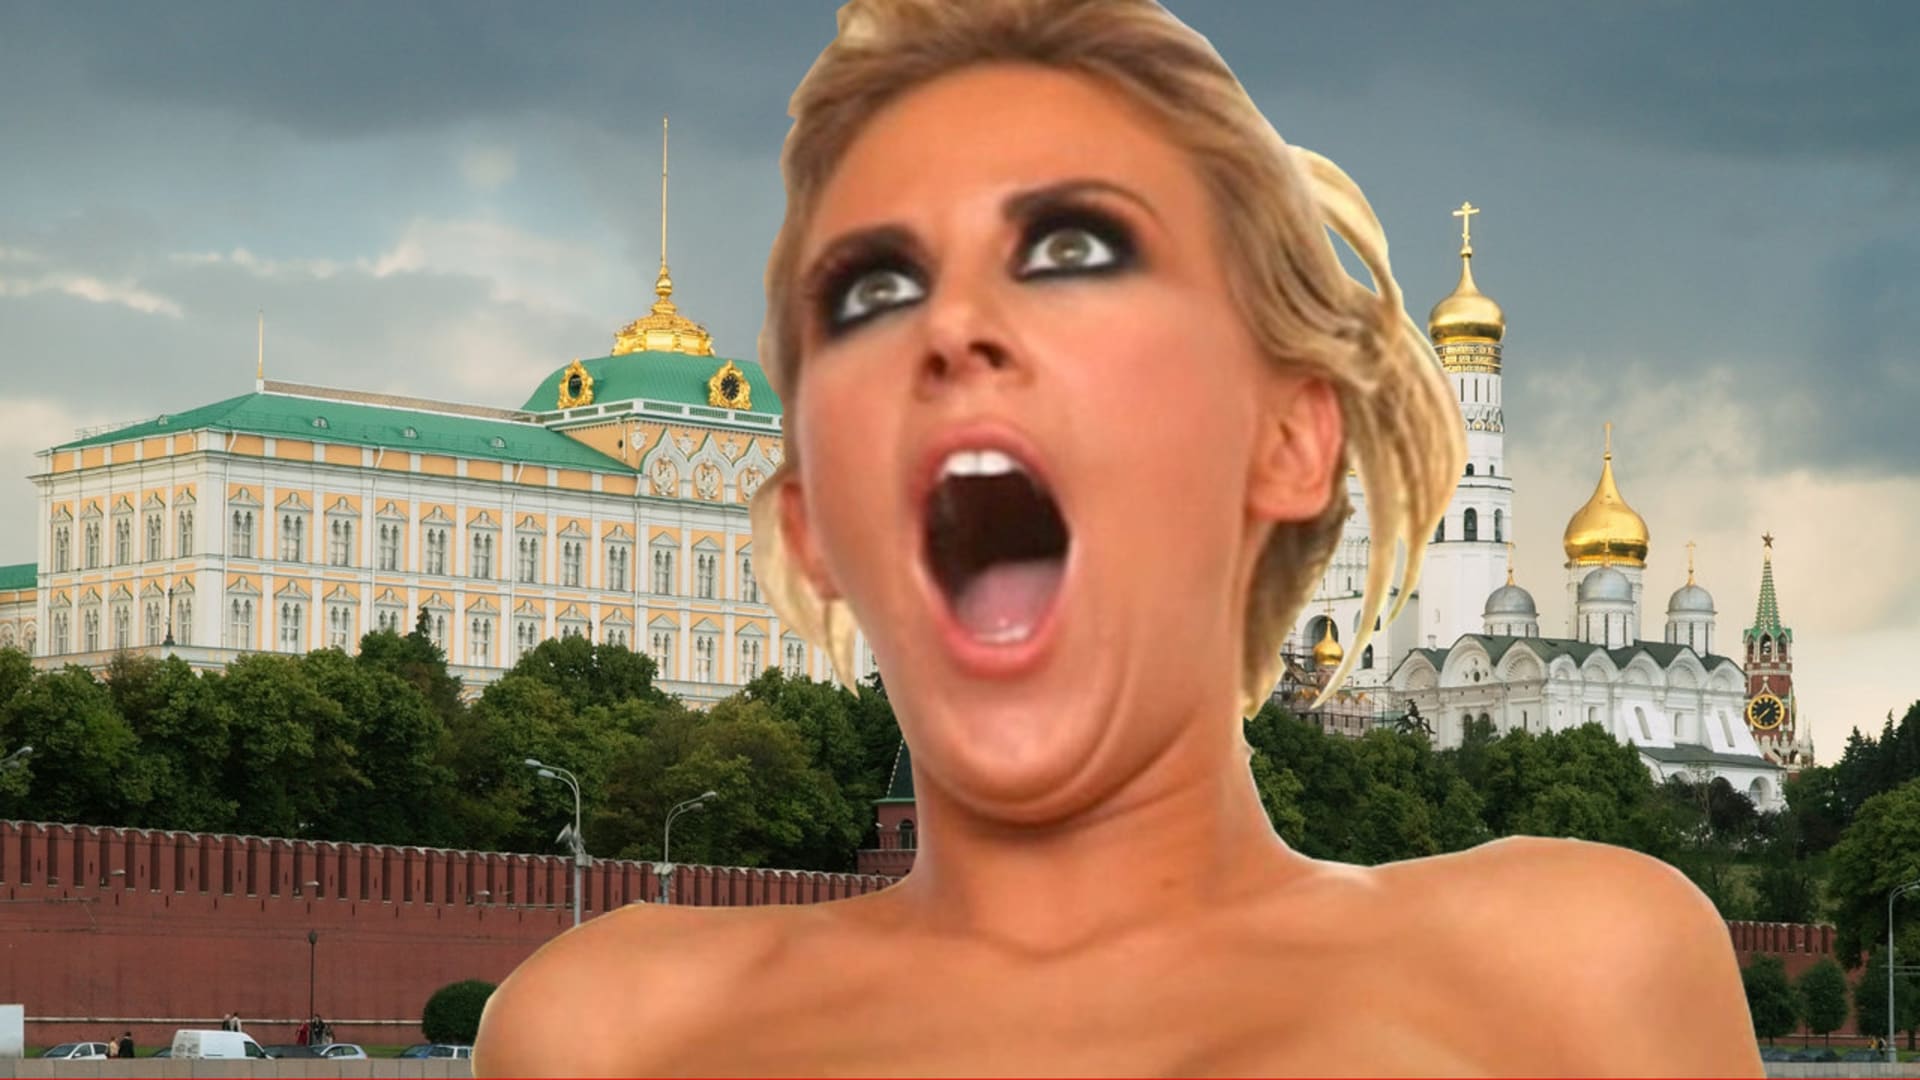 Porno je pro slabochy, mají jasno v mocném Rusku